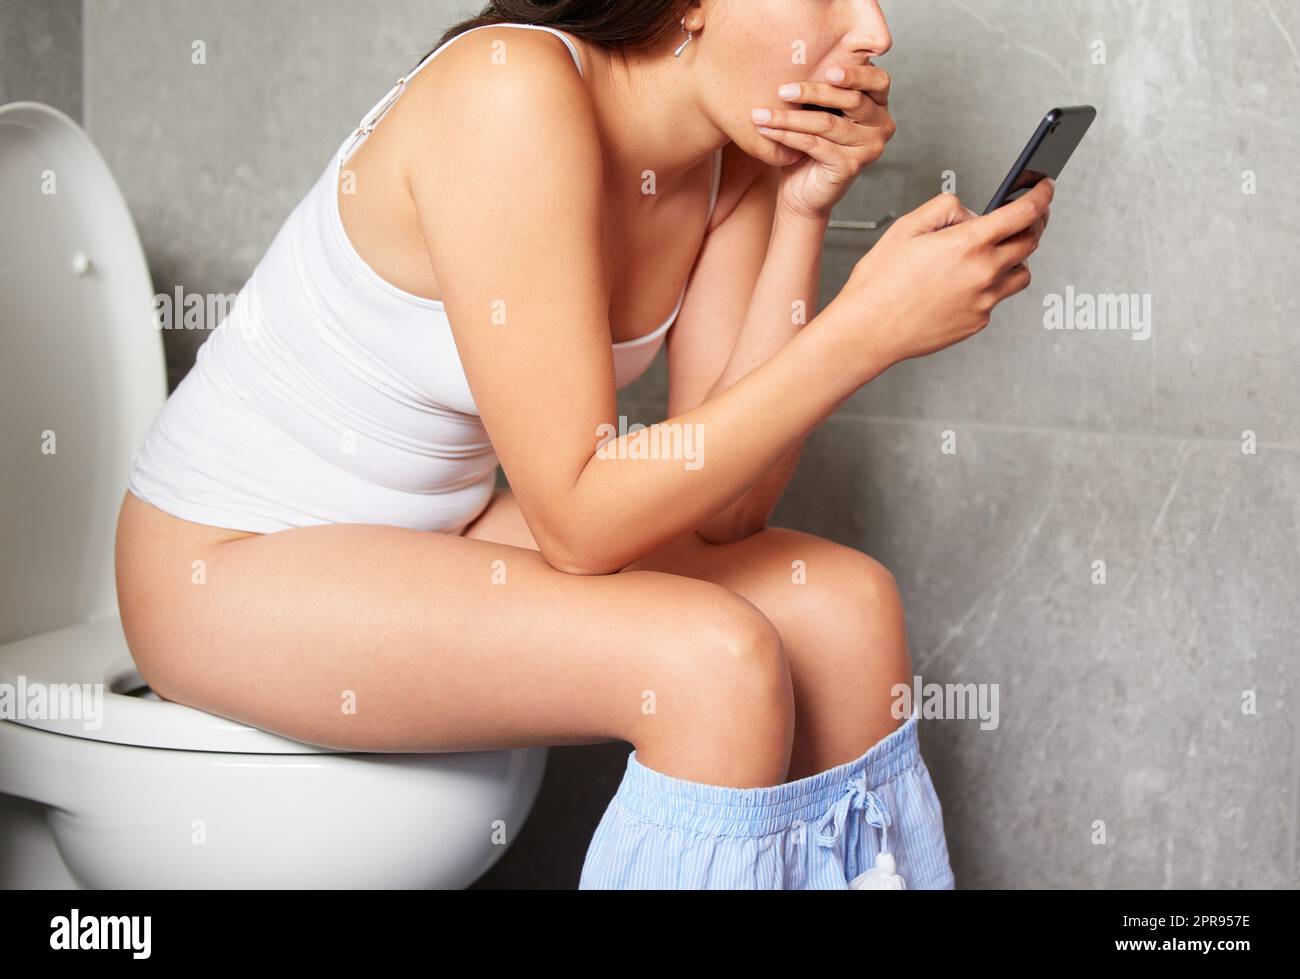 Das ist schockierend, eine junge Frau, die ein Telefon benutzt, während sie auf der Toilette im Badezimmer sitzt. Stockfoto